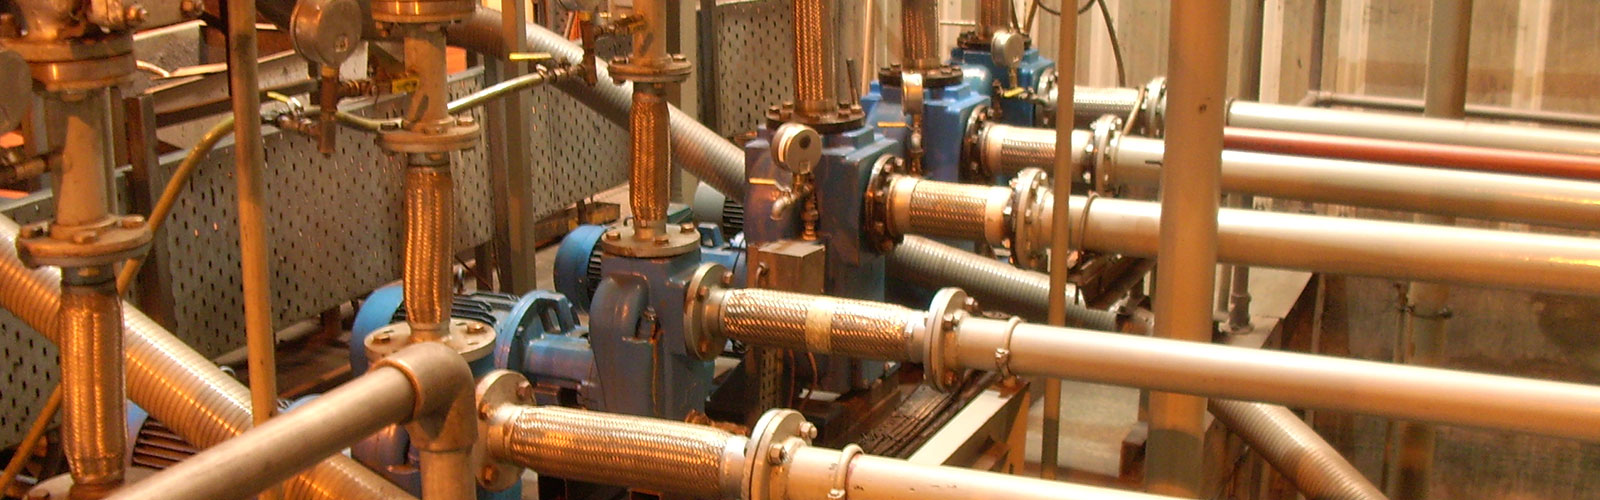 Suppliers of Allweiler Propeller Pumps